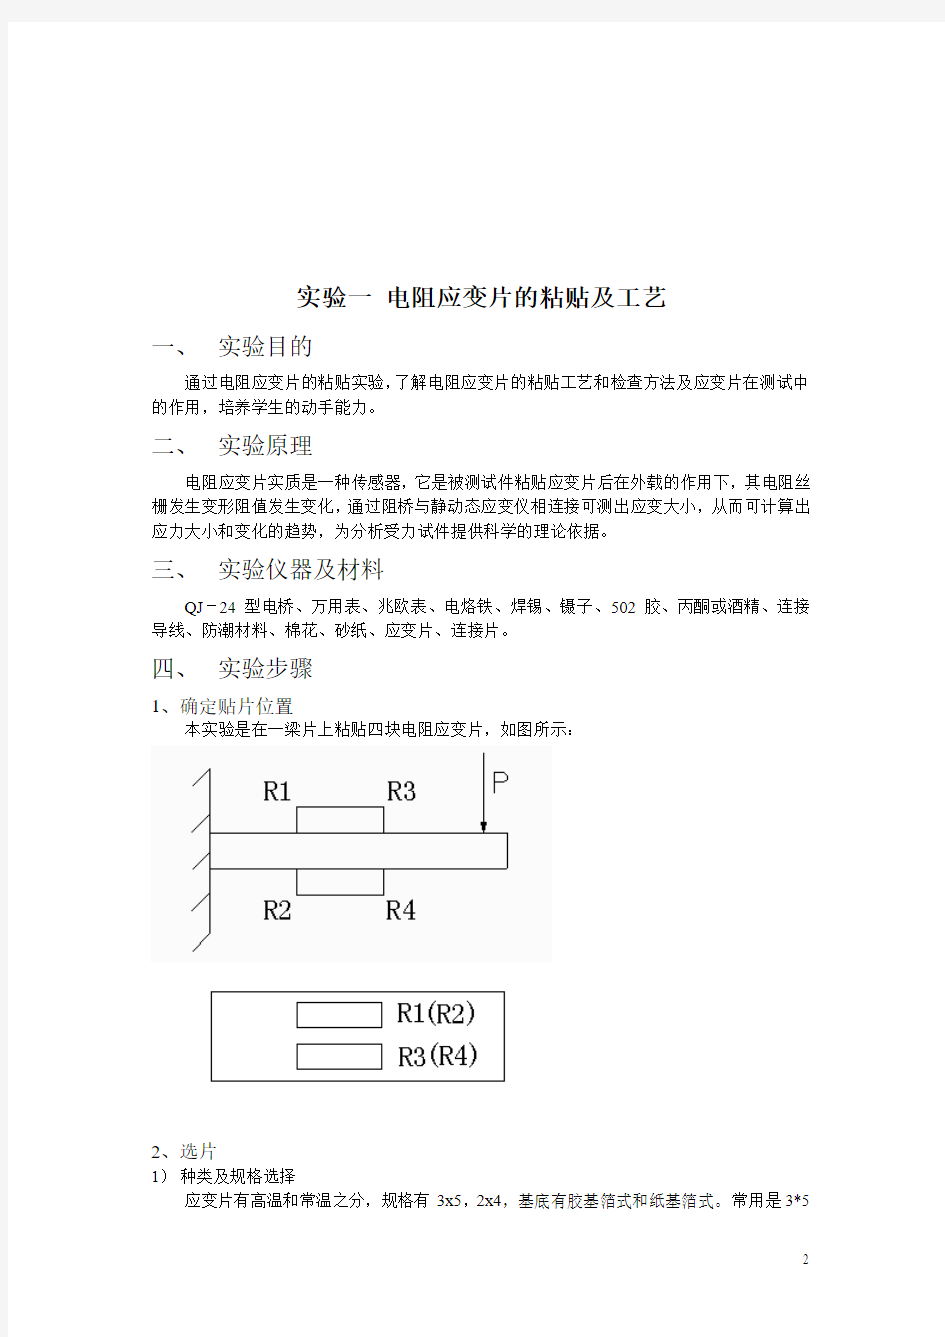 中南大学机械工程测试技术实验指导书